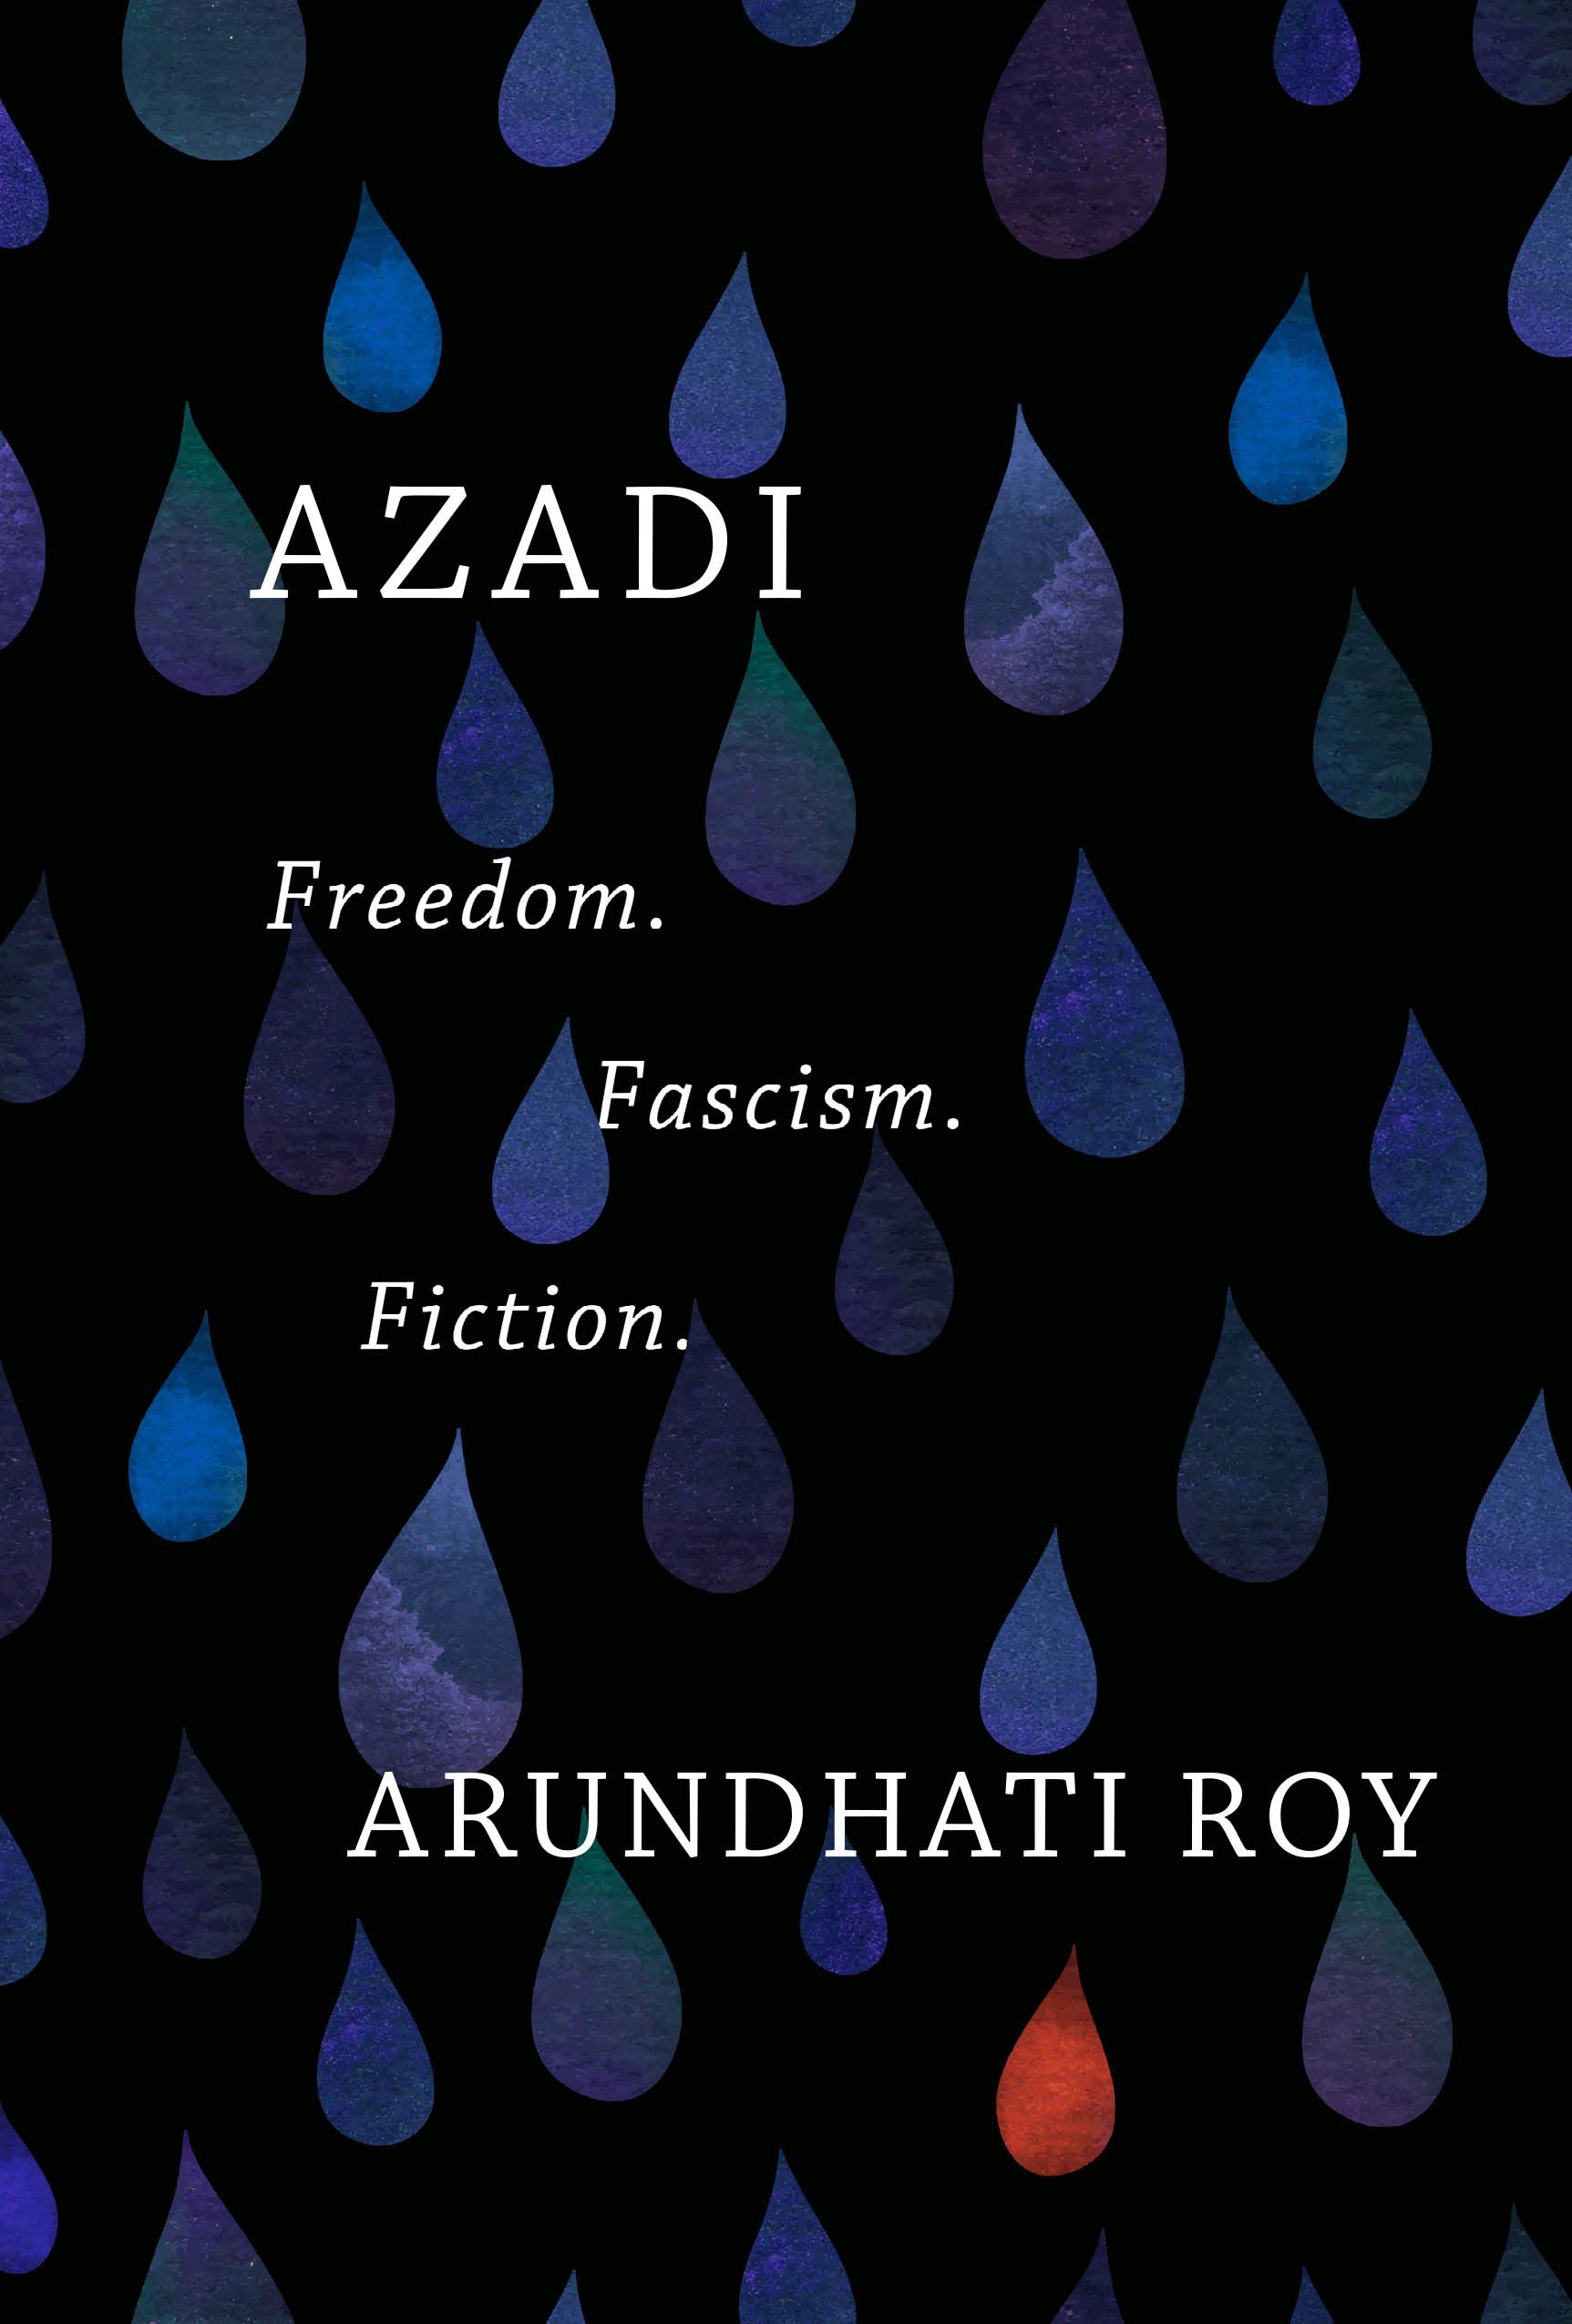 الغلاف الإنكليزي لكتاب الحرية "آزادي" للكاتبة أرونداتي روي.  (published by Haymarket Books)